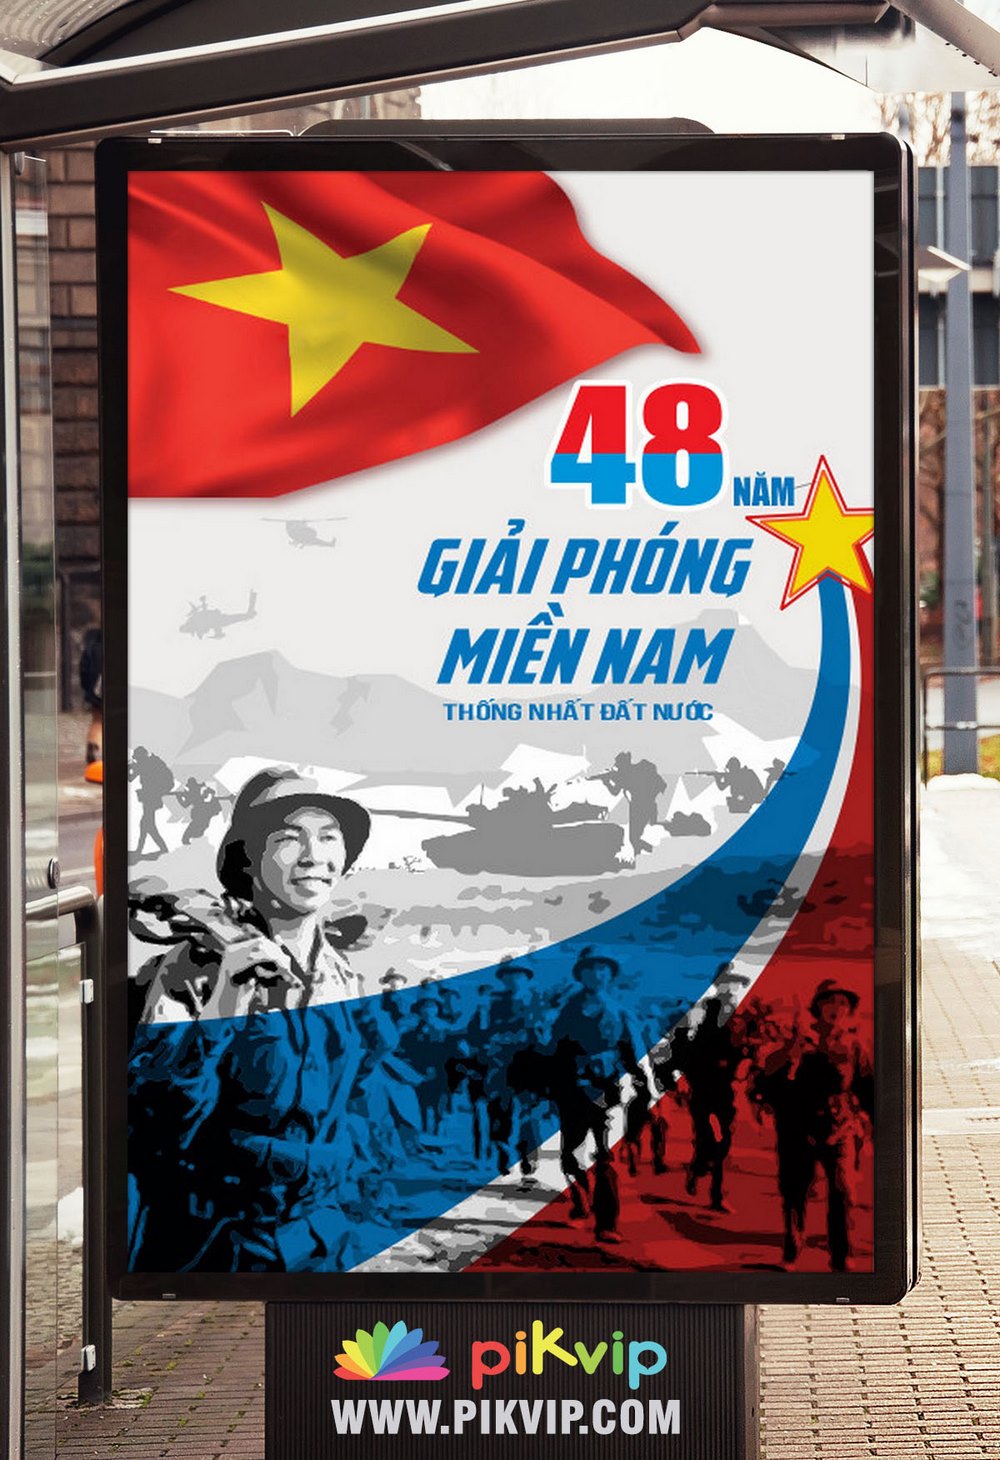 Pano dọc chào mừng ngày giải phóng miền  nam và quốc tế lao động file corel 38